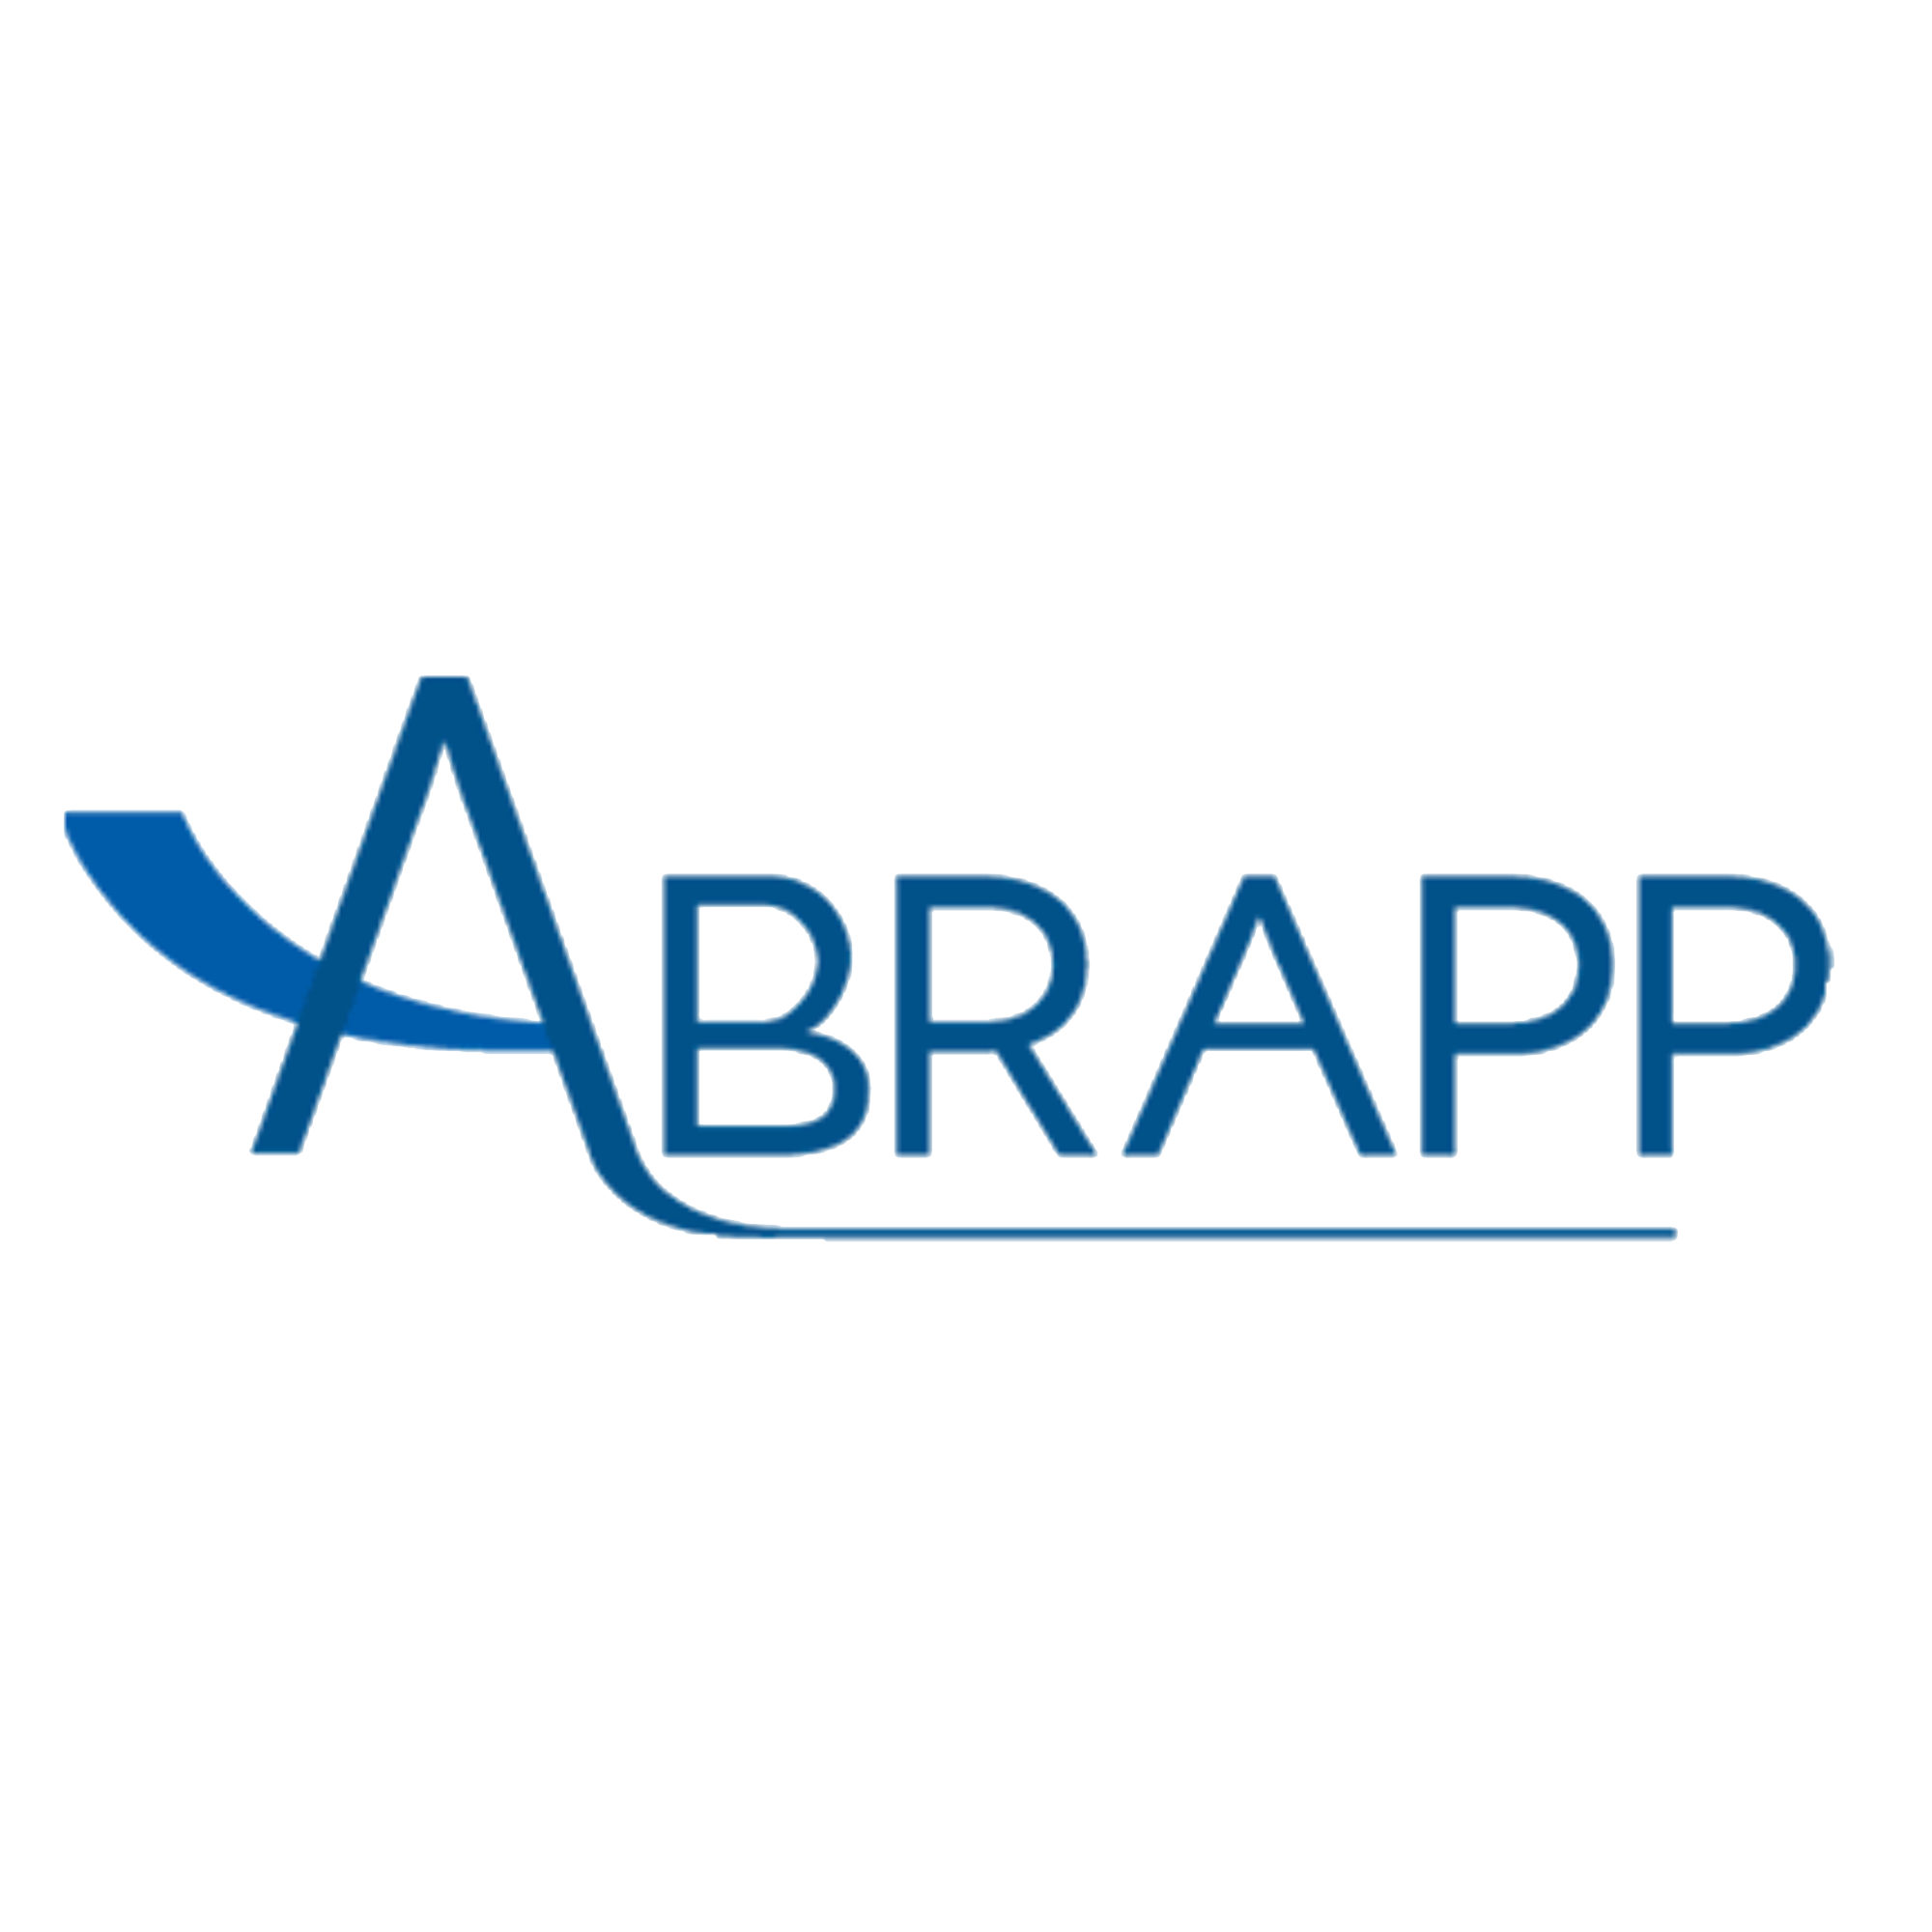 ABRAPP